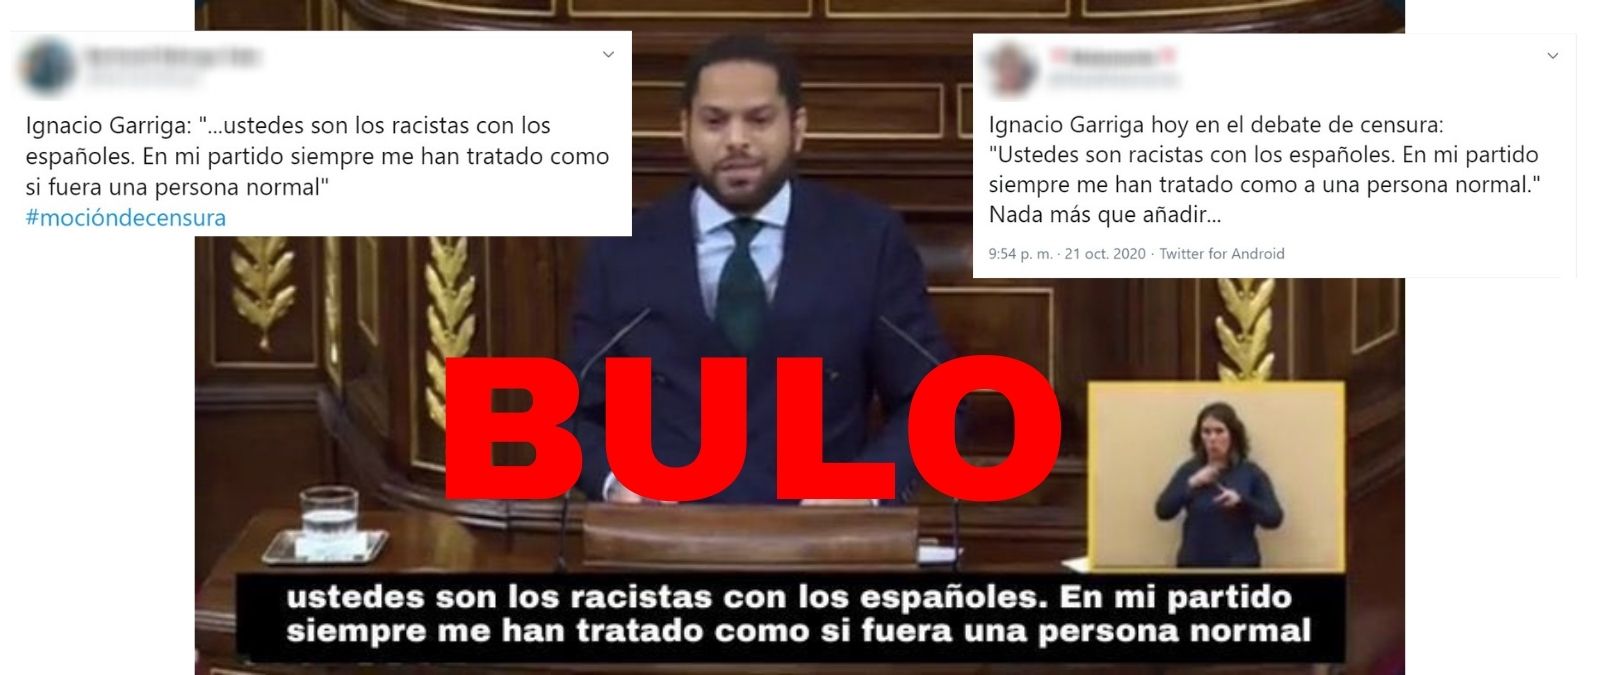 No, el diputado de Vox Ignacio Garriga no ha dicho que &quot;ustedes son los racistas con los españoles&quot; ni que en su partido...